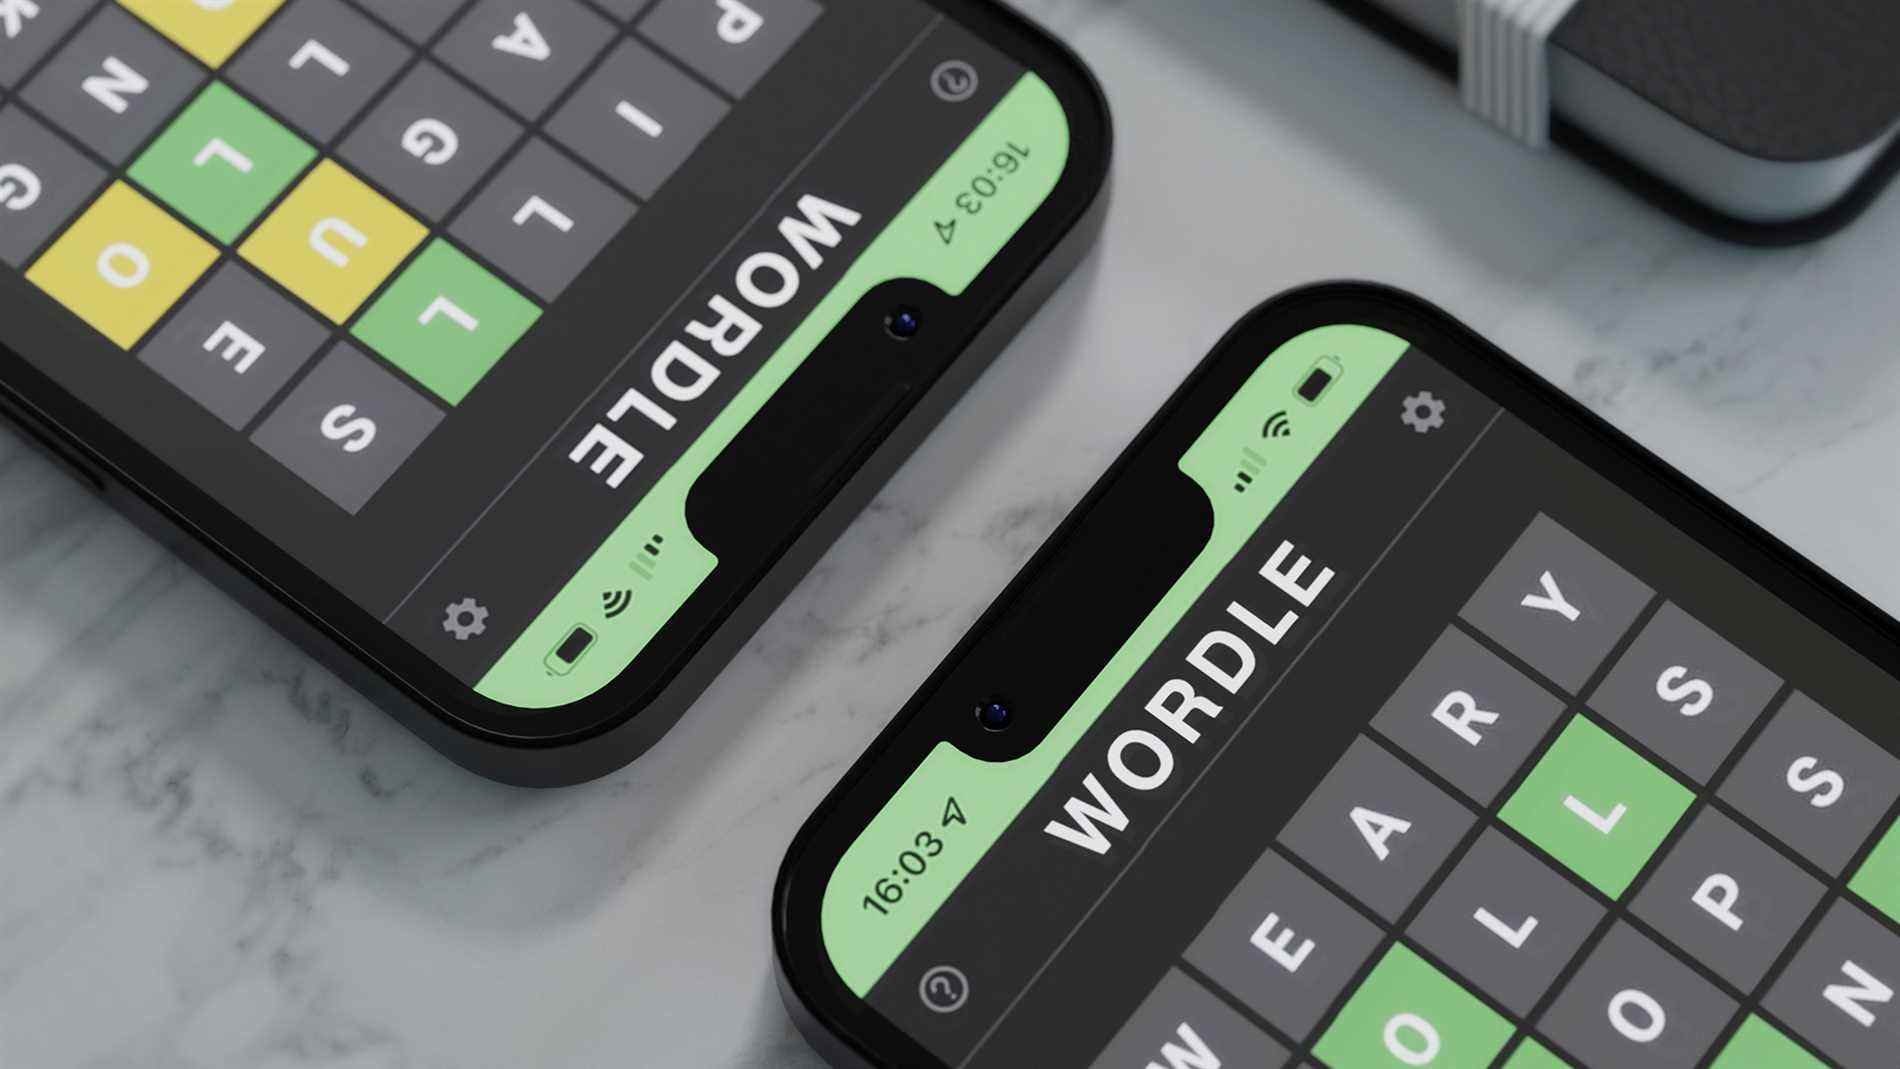 Le jeu Wordle affiché sur deux smartphones